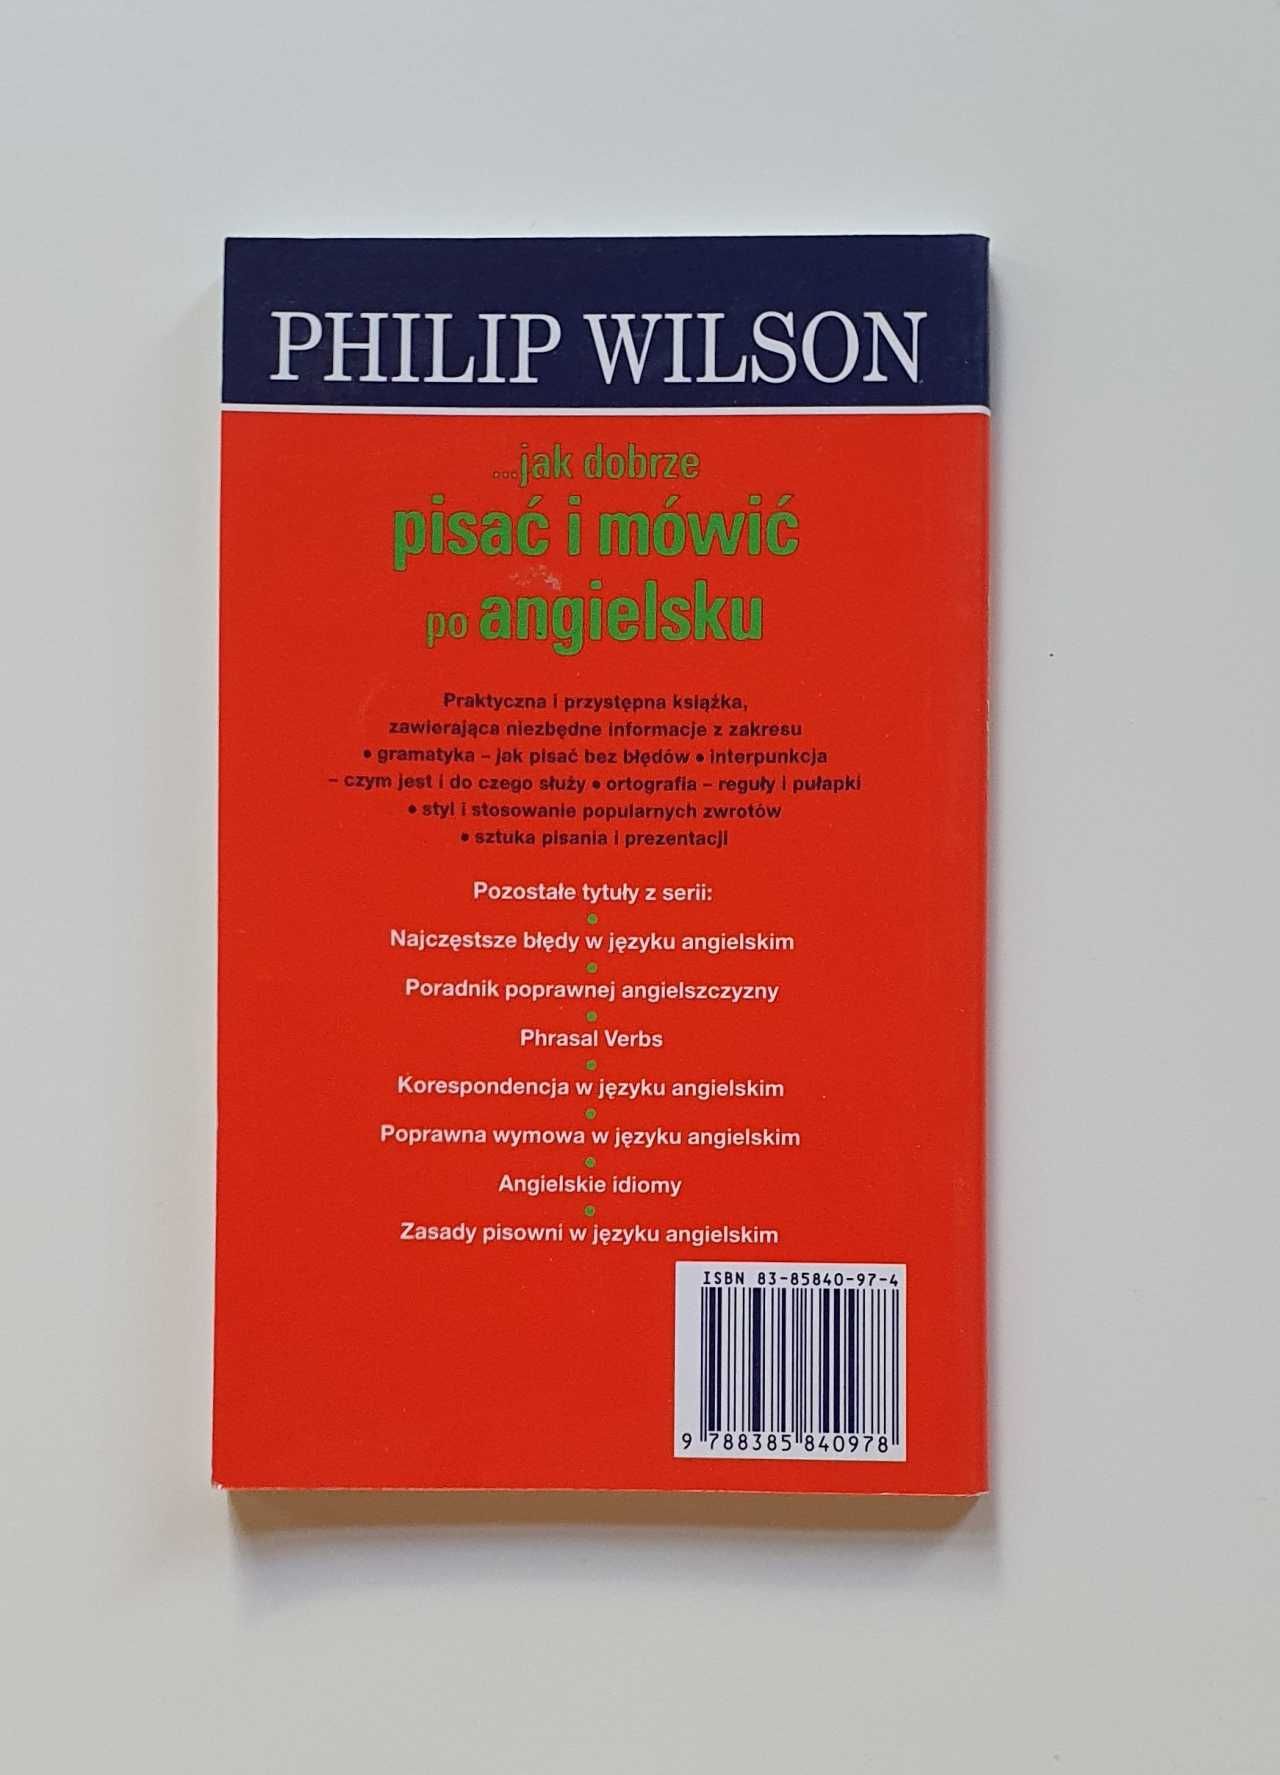 Korespondencja w języku angielskim / Philip Wilson